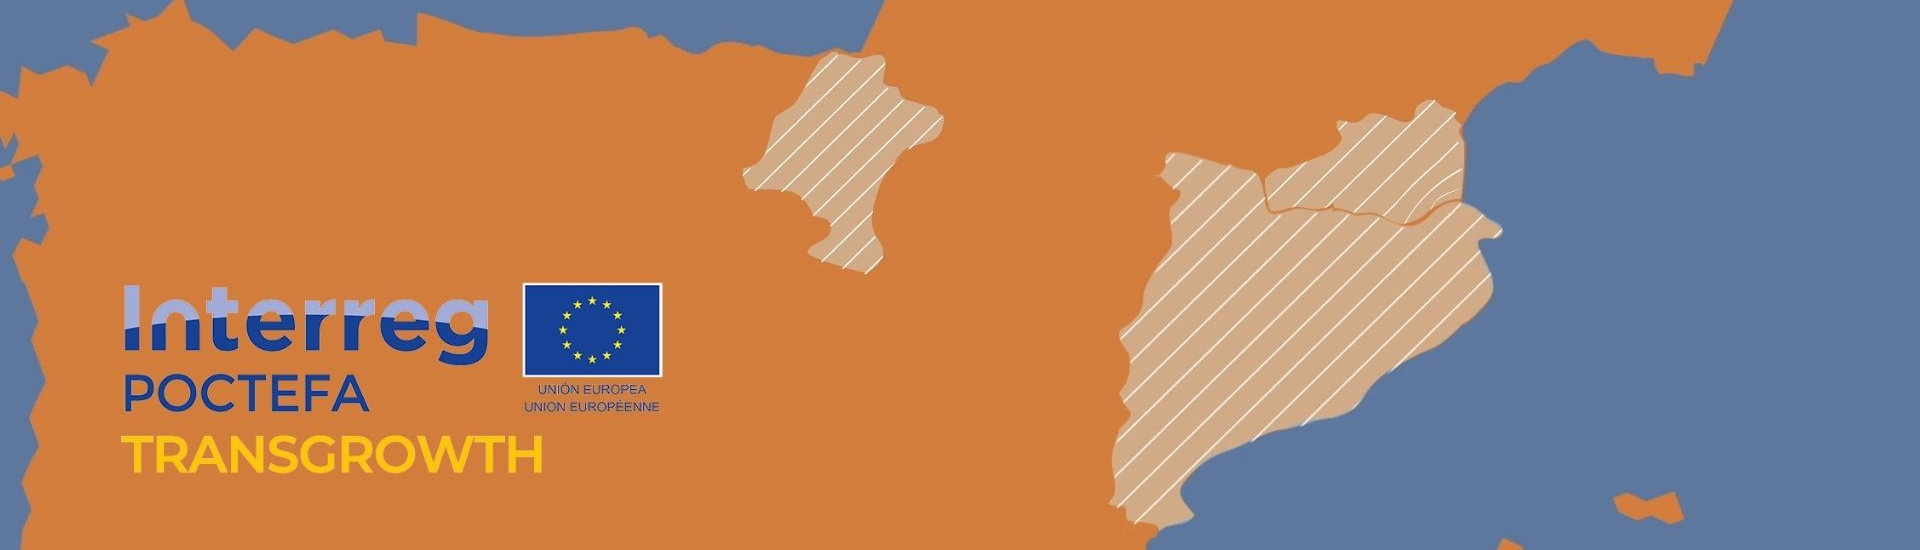 Navarra se suma a Cataluña y Pirineos Orientales en el proyecto Transgrowth